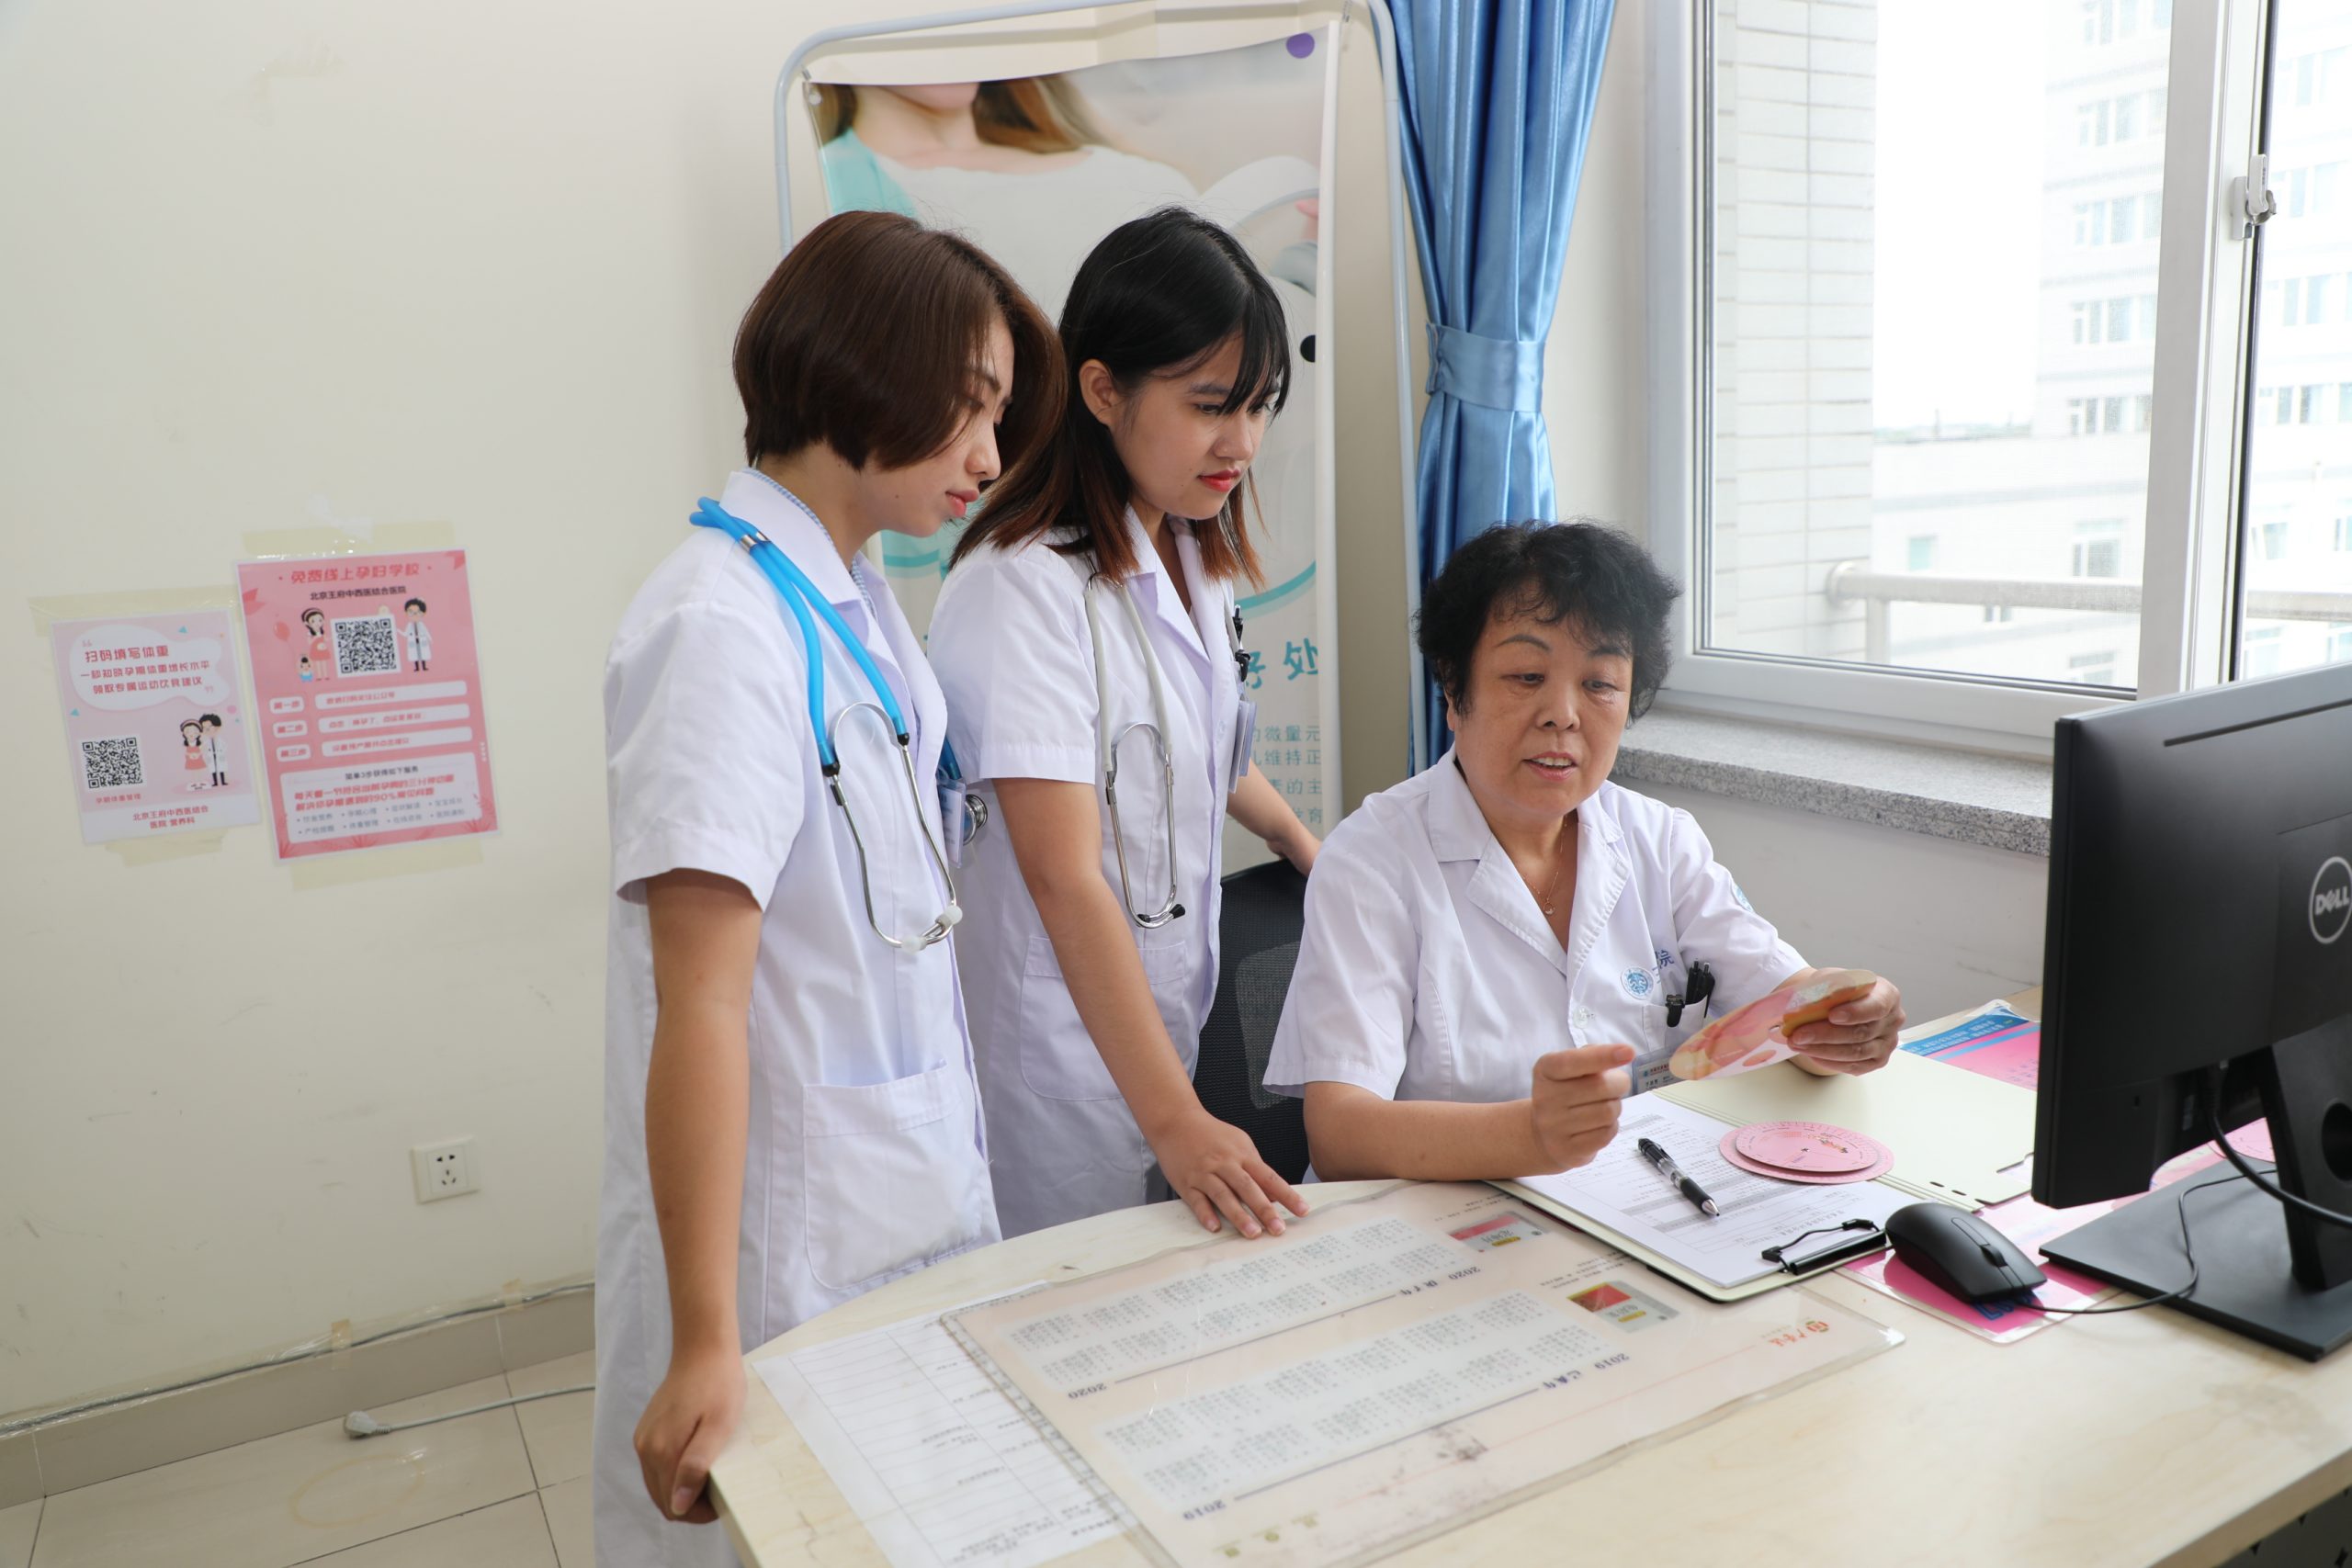 王府医院营养科成功为一名高龄妊娠糖尿病患者进行医学营养治疗